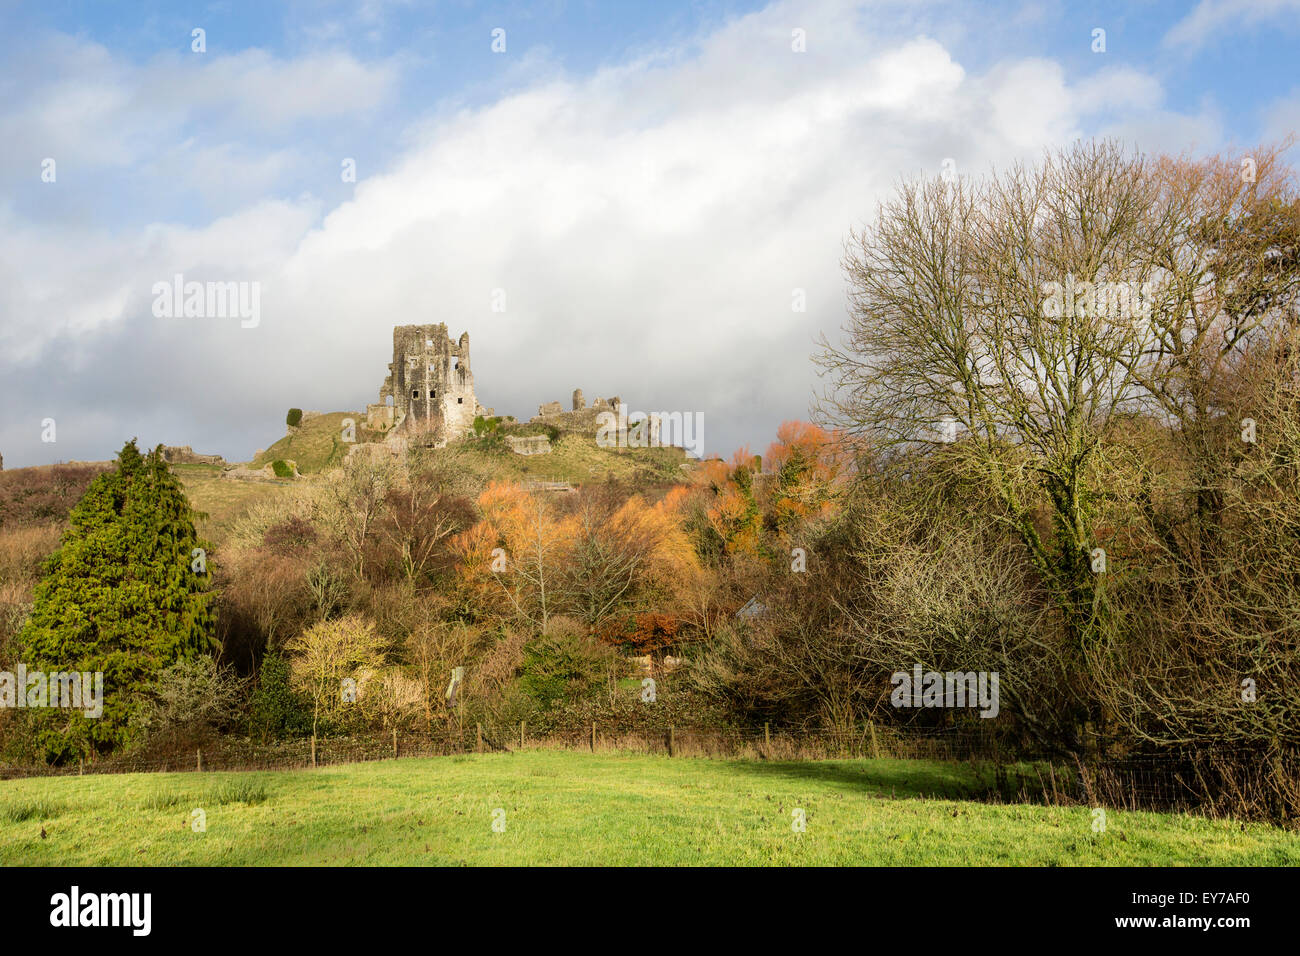 Une vue sur les vestiges historiques du 11ème siècle château de Corfe, construit par Guillaume le Conquérant dans le Dorset, en Angleterre sur une journée l'hiver Banque D'Images